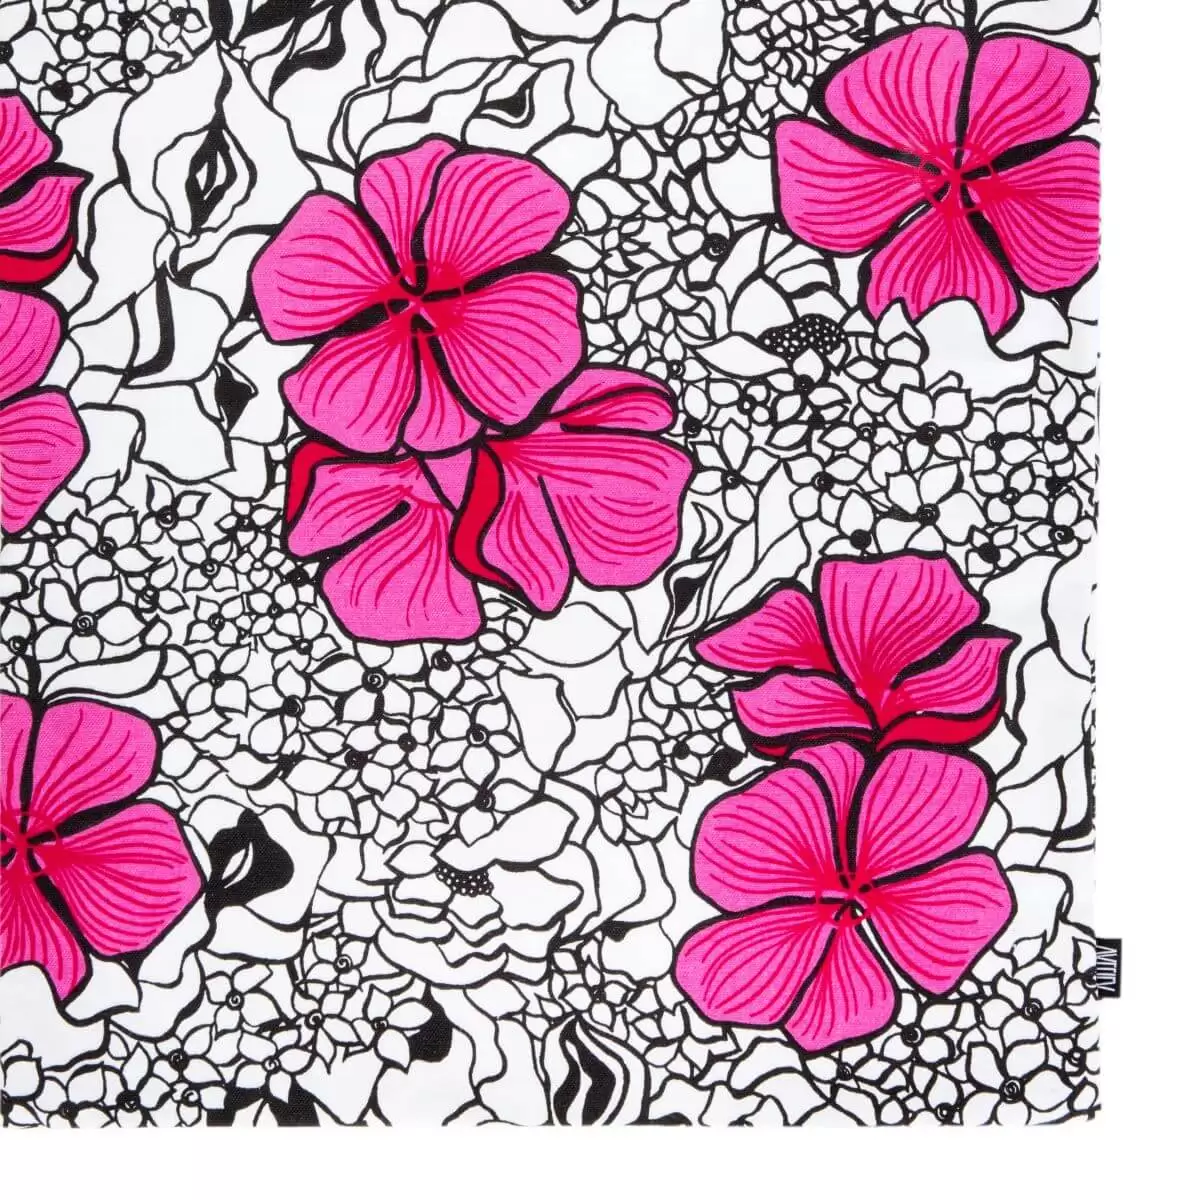 Duża torba bawełniana w kwiaty ELLE. Graficzny wzór w splecione eleganckie różowe i drobne szare kwiaty na białym tle. Skandynawski nowoczesny design